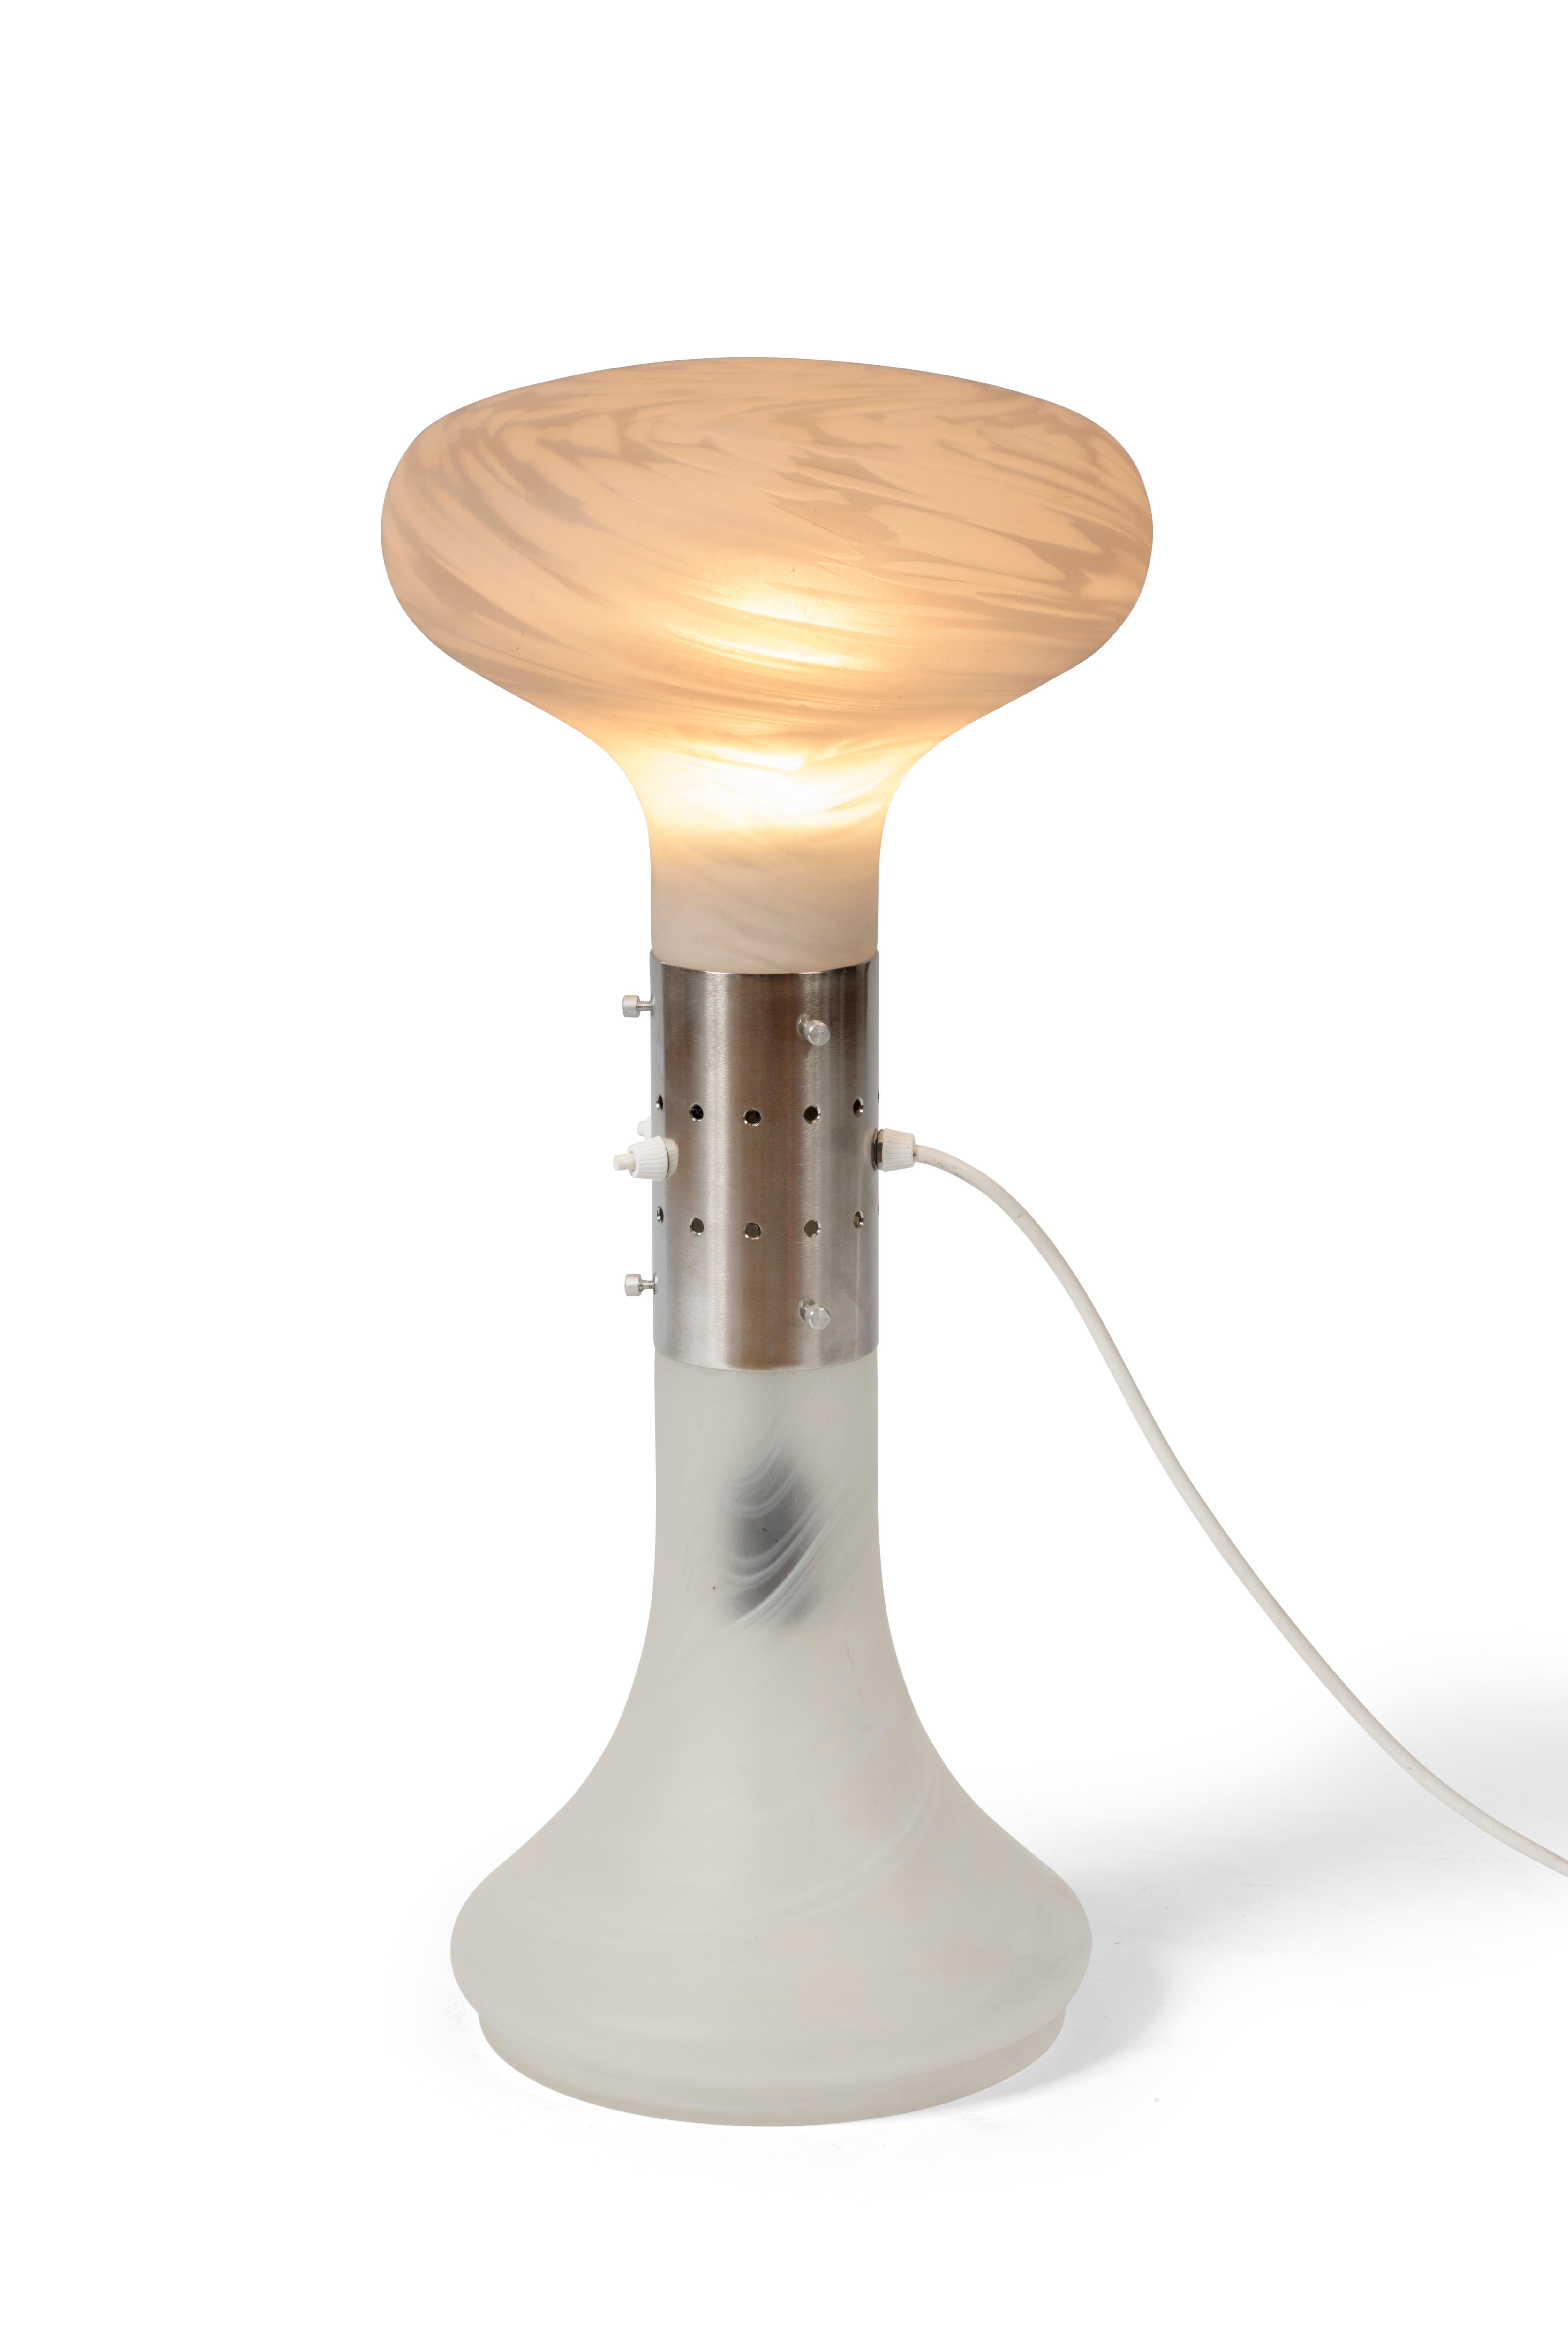 Lampe des années 70 de la légendaire série “I Numerati” de Carlo Nason pour Mazzega, Italie.

De couleur blanche, fabriquée en verre de Murano translucide et métal.

Fonctionne avec deux ampoules qui peuvent être allumées séparément.